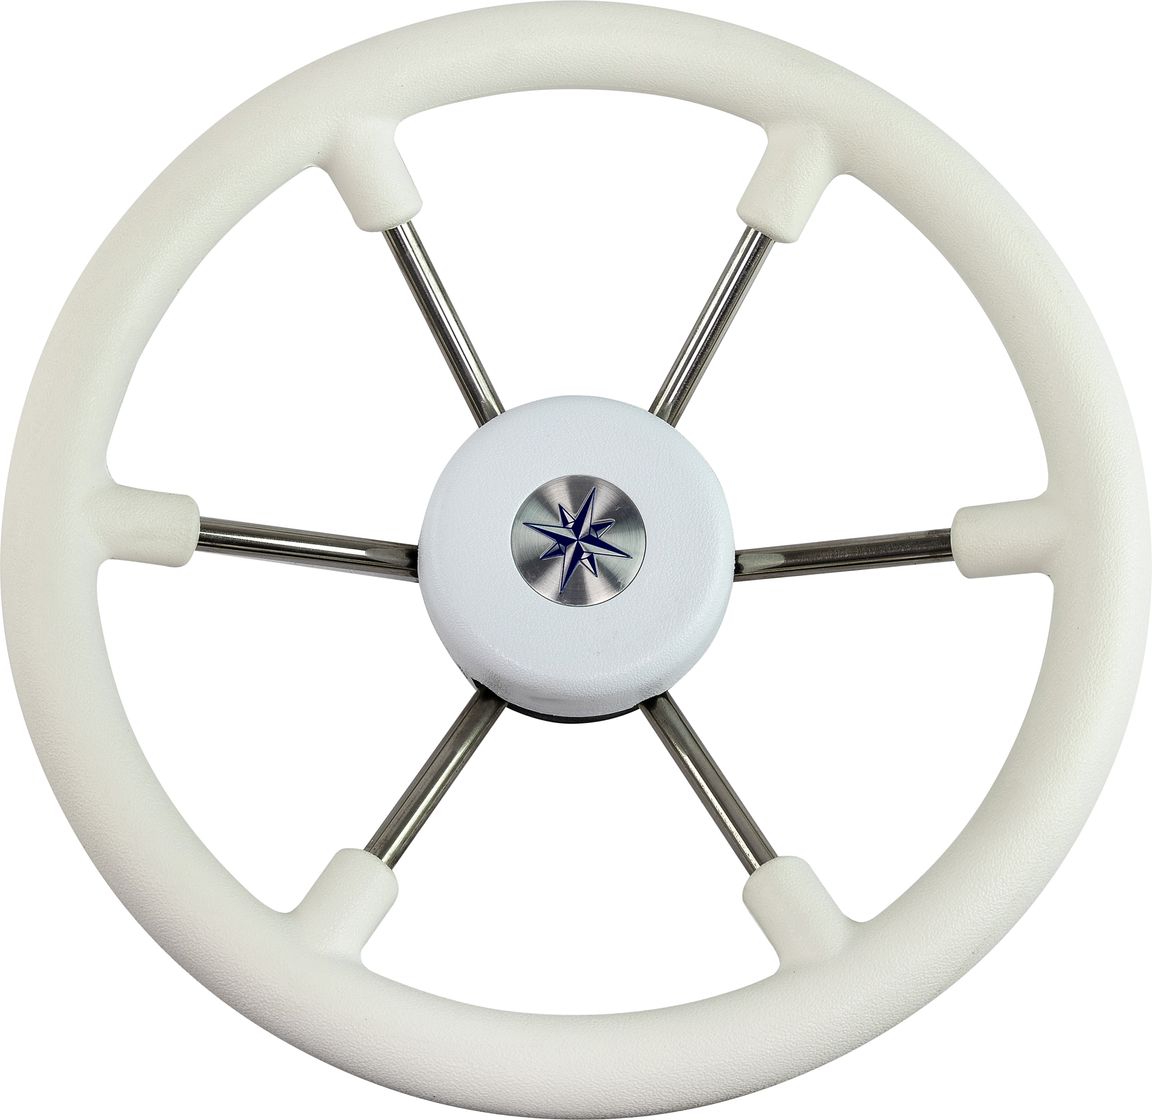 Рулевое колесо LEADER TANEGUM белый обод серебряные спицы д. 330 мм VN7330-08 рулевое колесо riviera белый обод и спицы д 350 мм vn8001 08